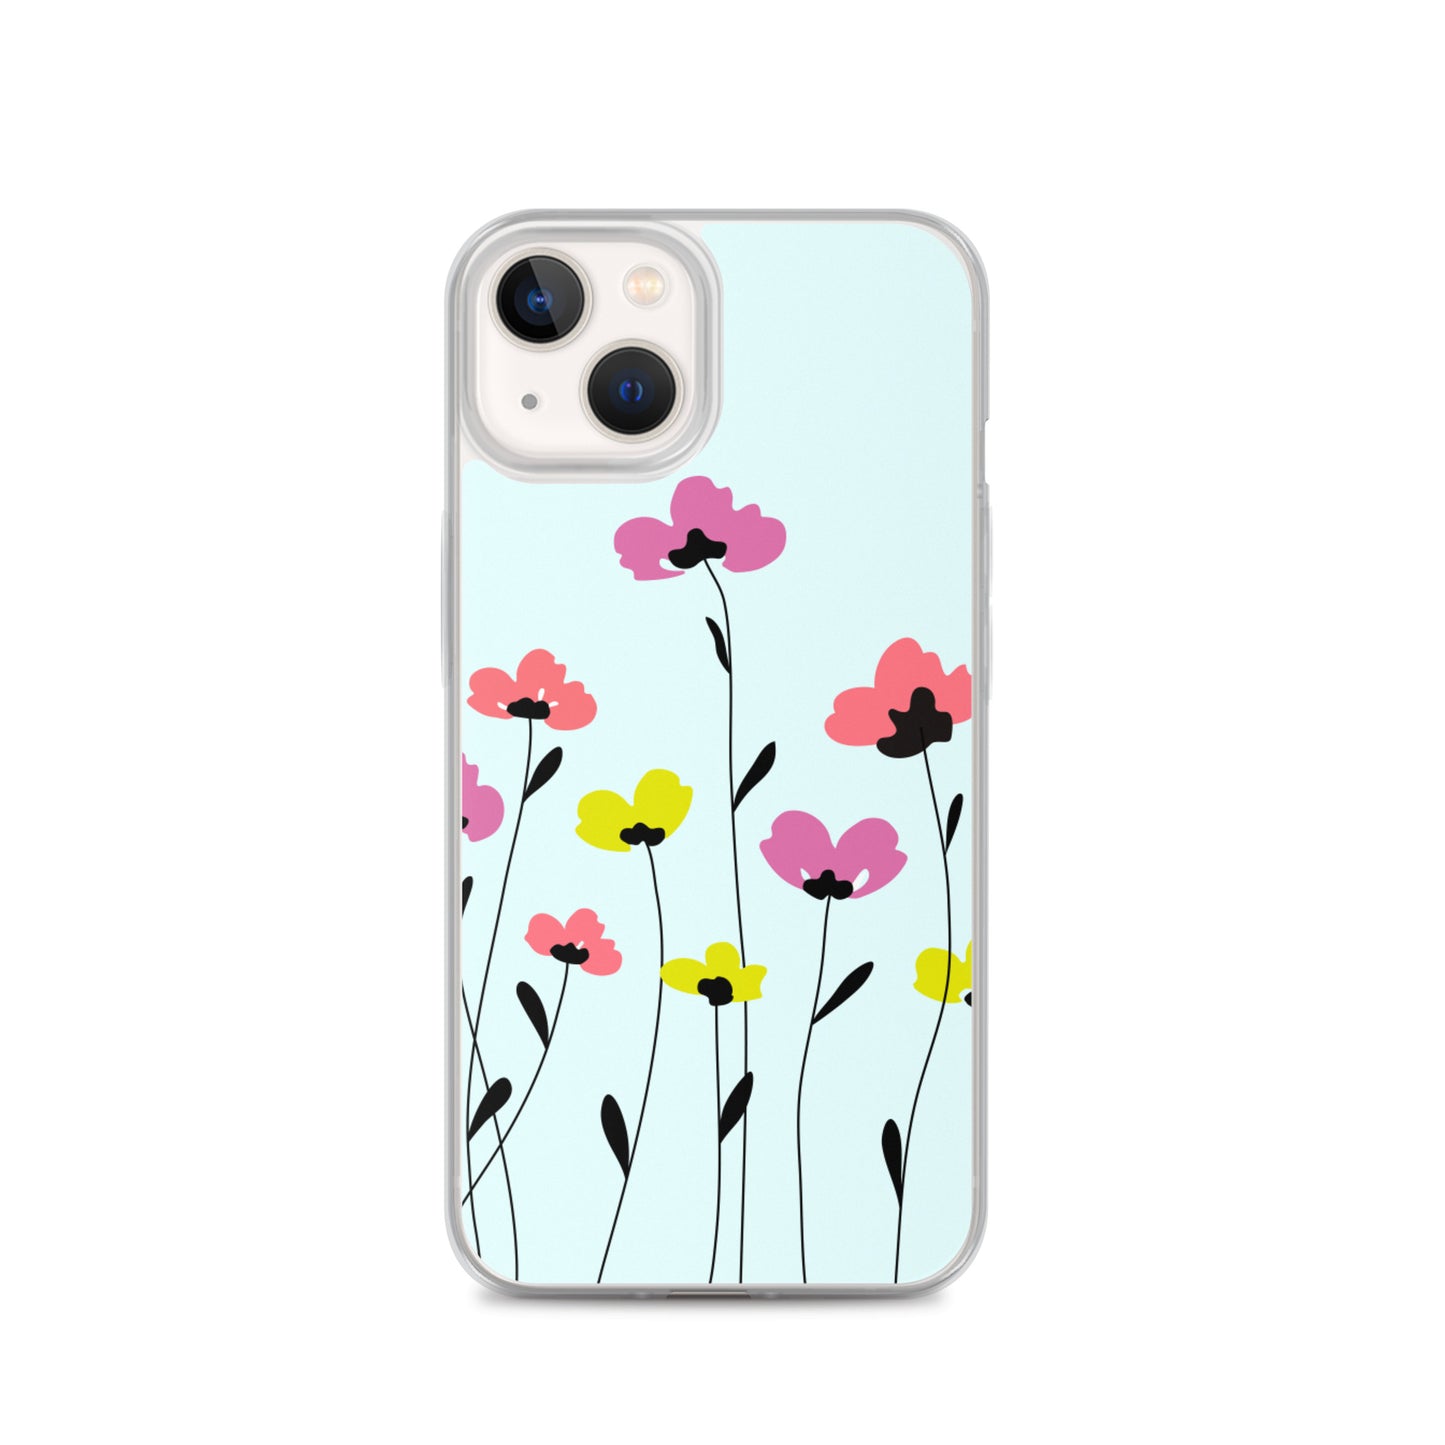 Springtime iPhone Case